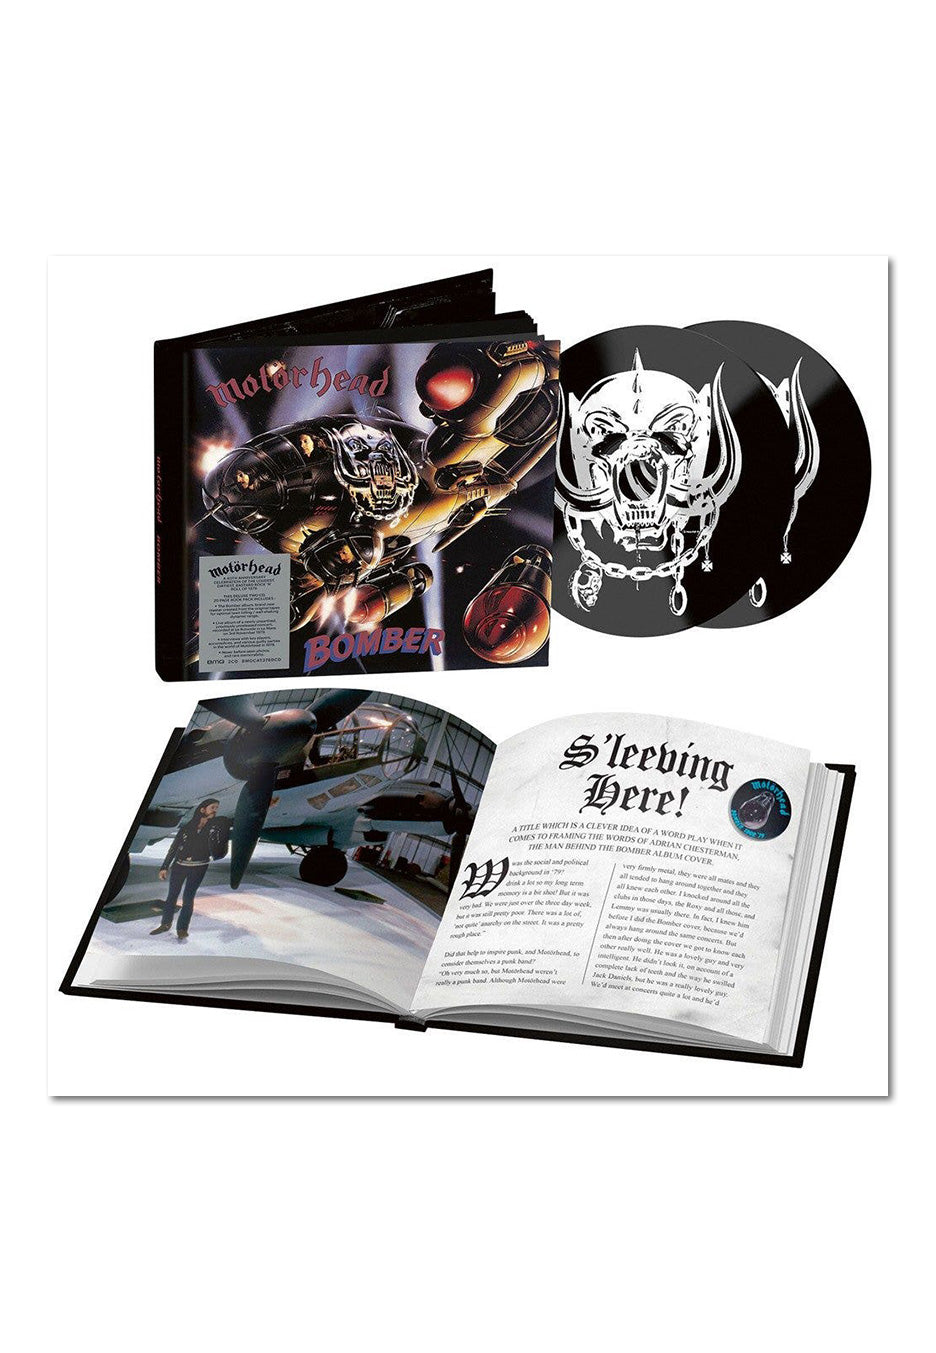 Motörhead - Bomber Mediabook - Digipak 2 CD